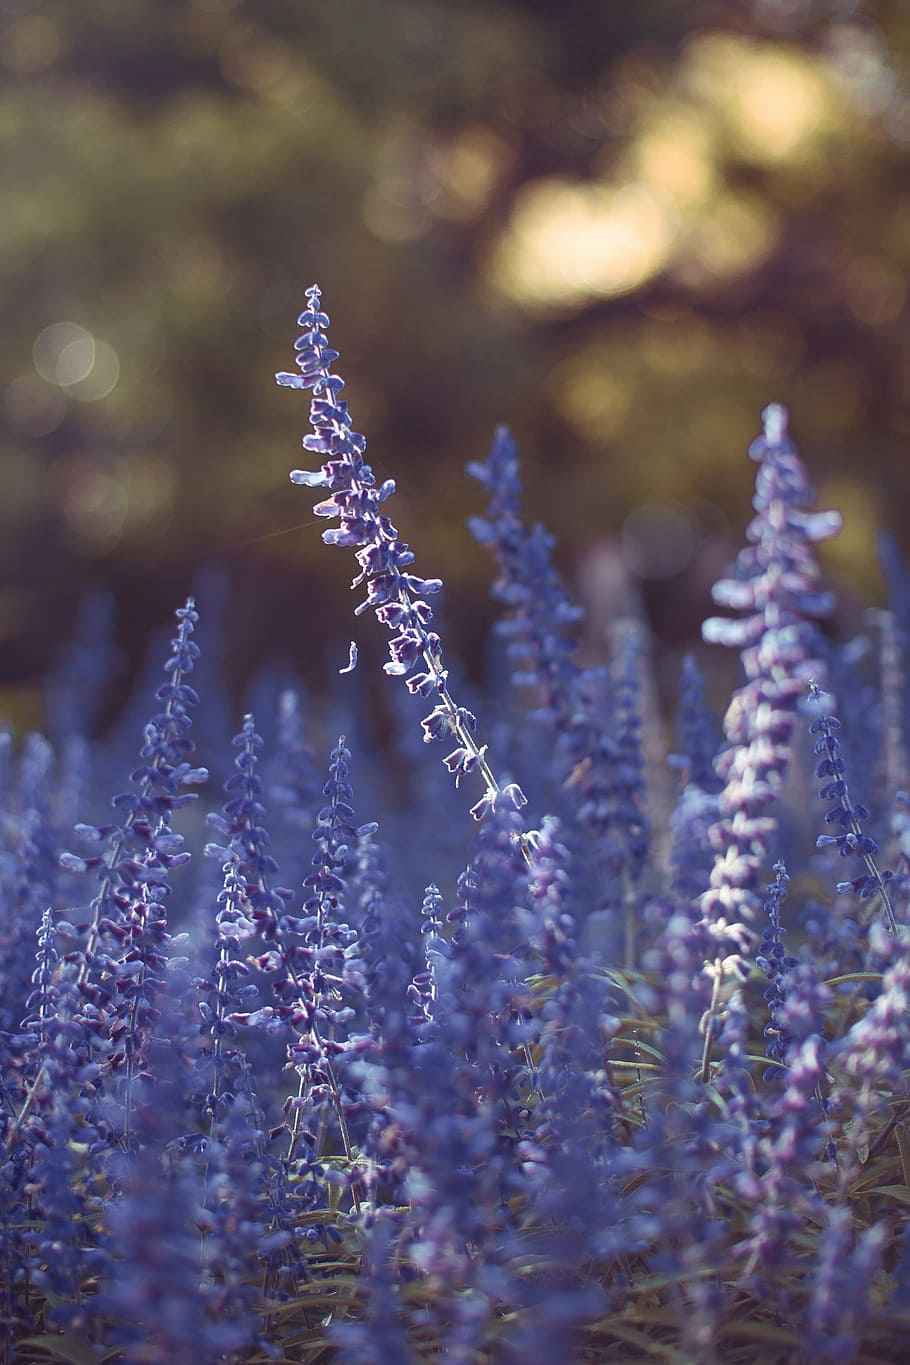 ungu, lavender, fotografi makro bunga, bidang, bunga, pertanian, outdoor, taman, alam, perjalanan